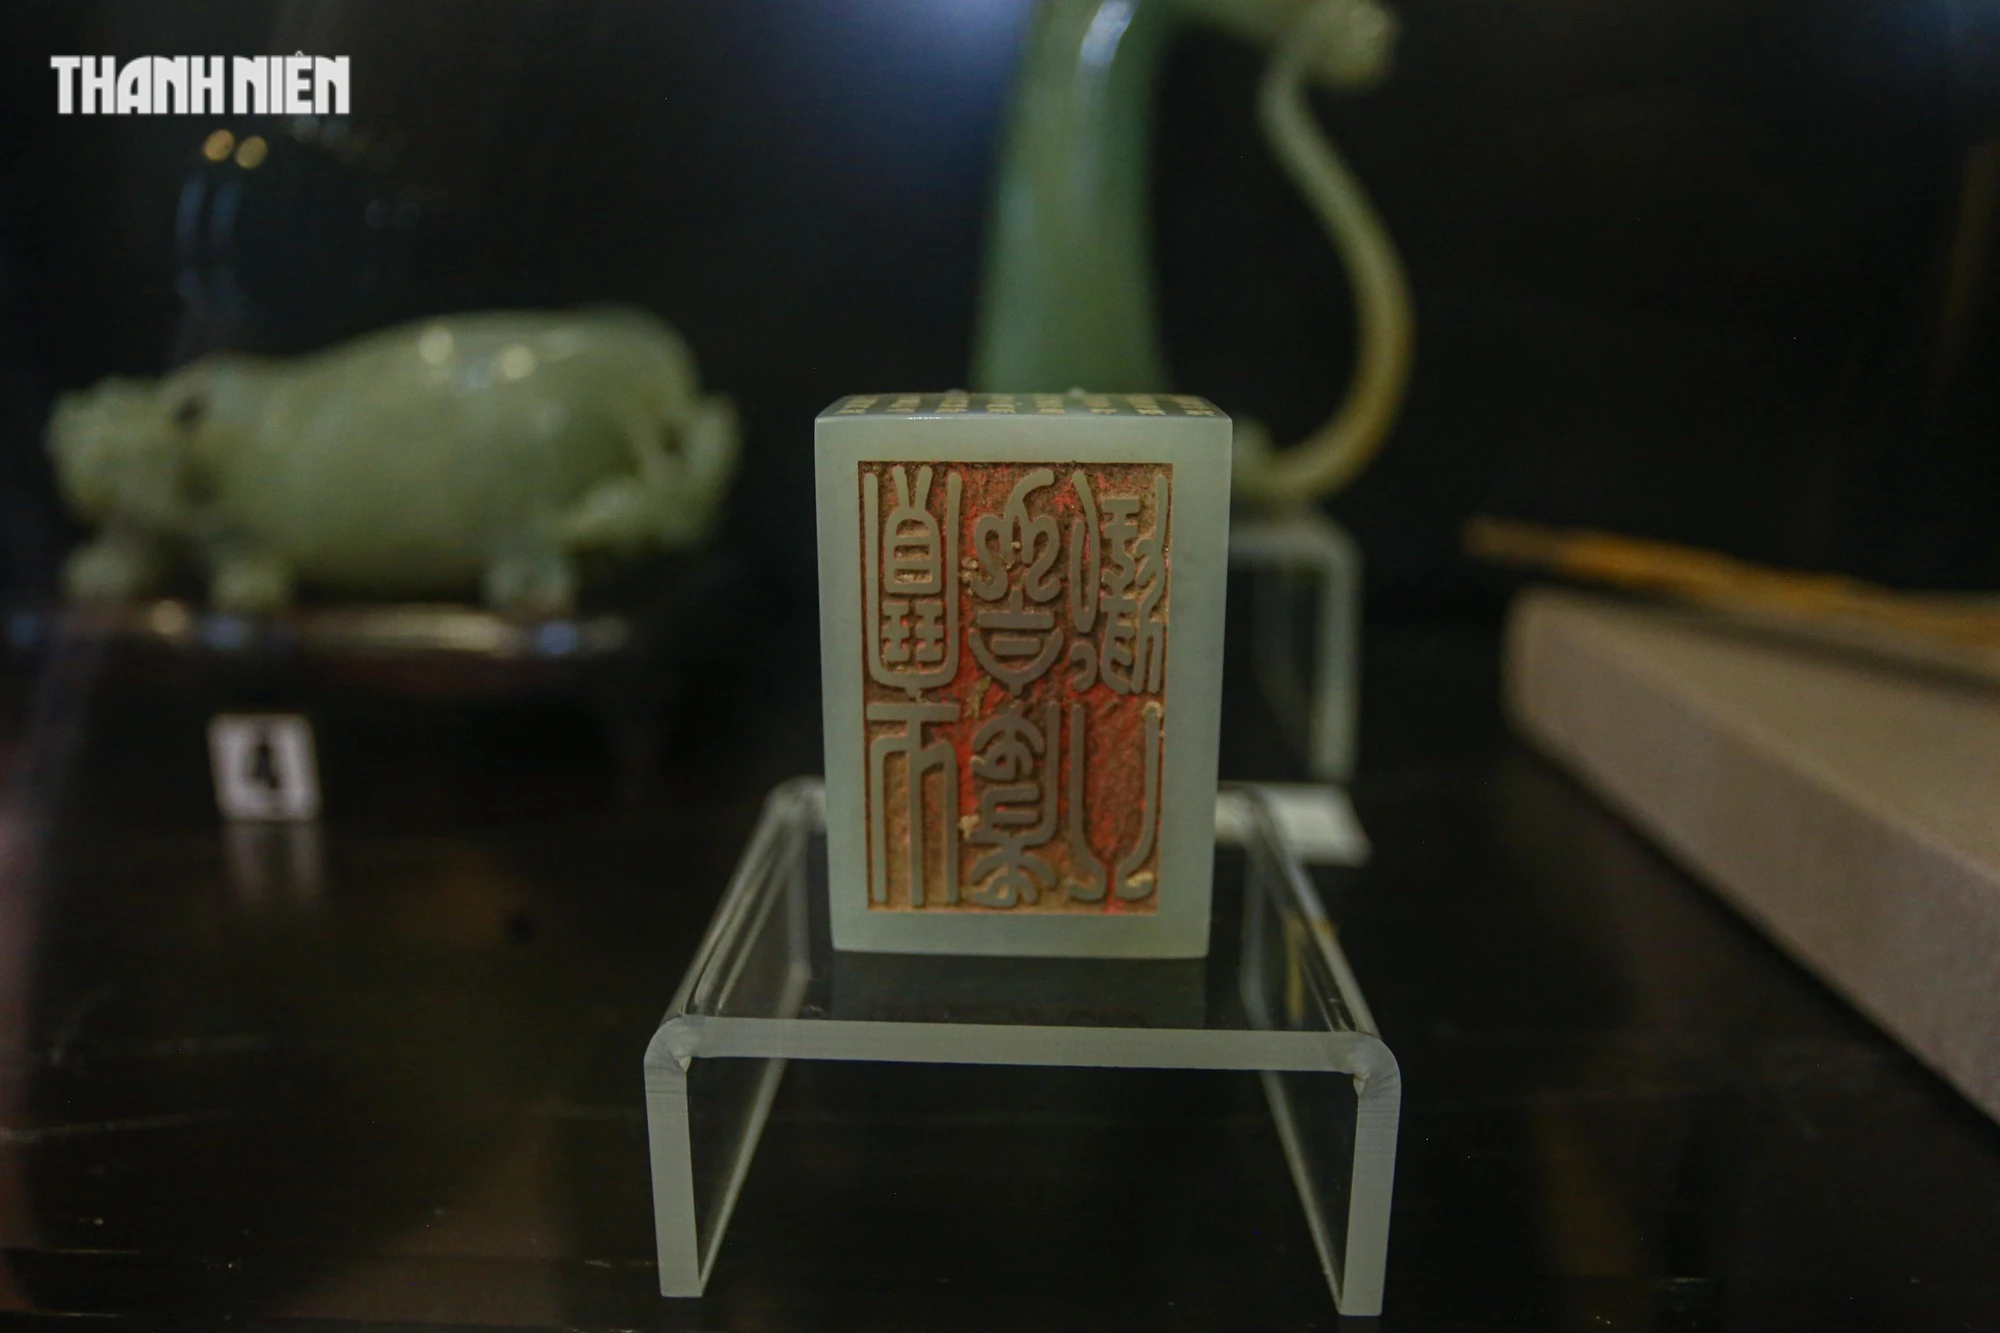 Chiêm ngưỡng hơn 70 món ngọc quý thời Nguyễn đang được trưng bày tại Huế - Ảnh 3.